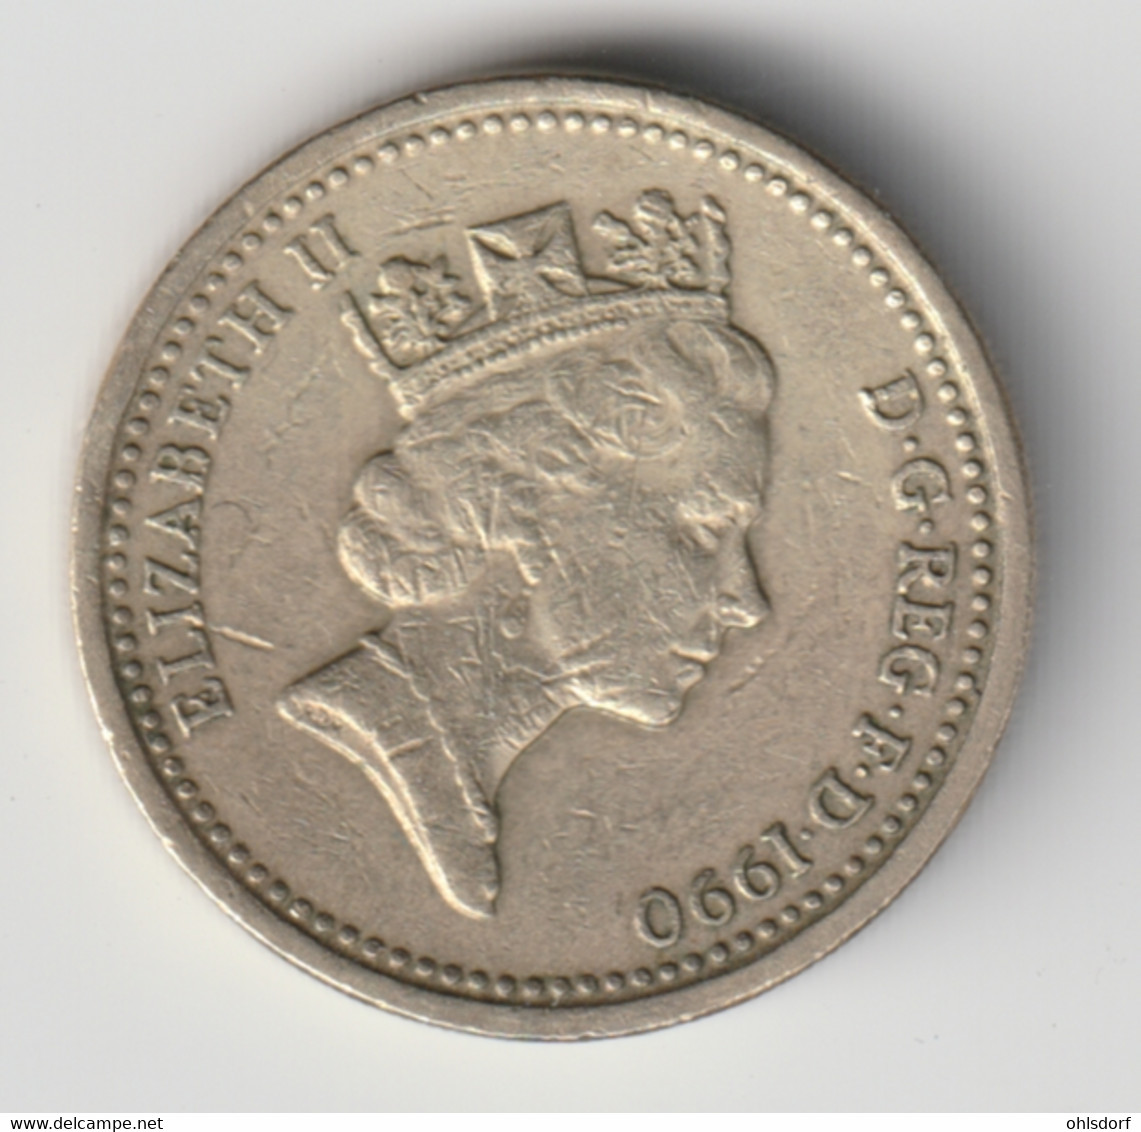 GREAT BRITAIN 1990: 1 Pound, KM 941 - 1 Pond